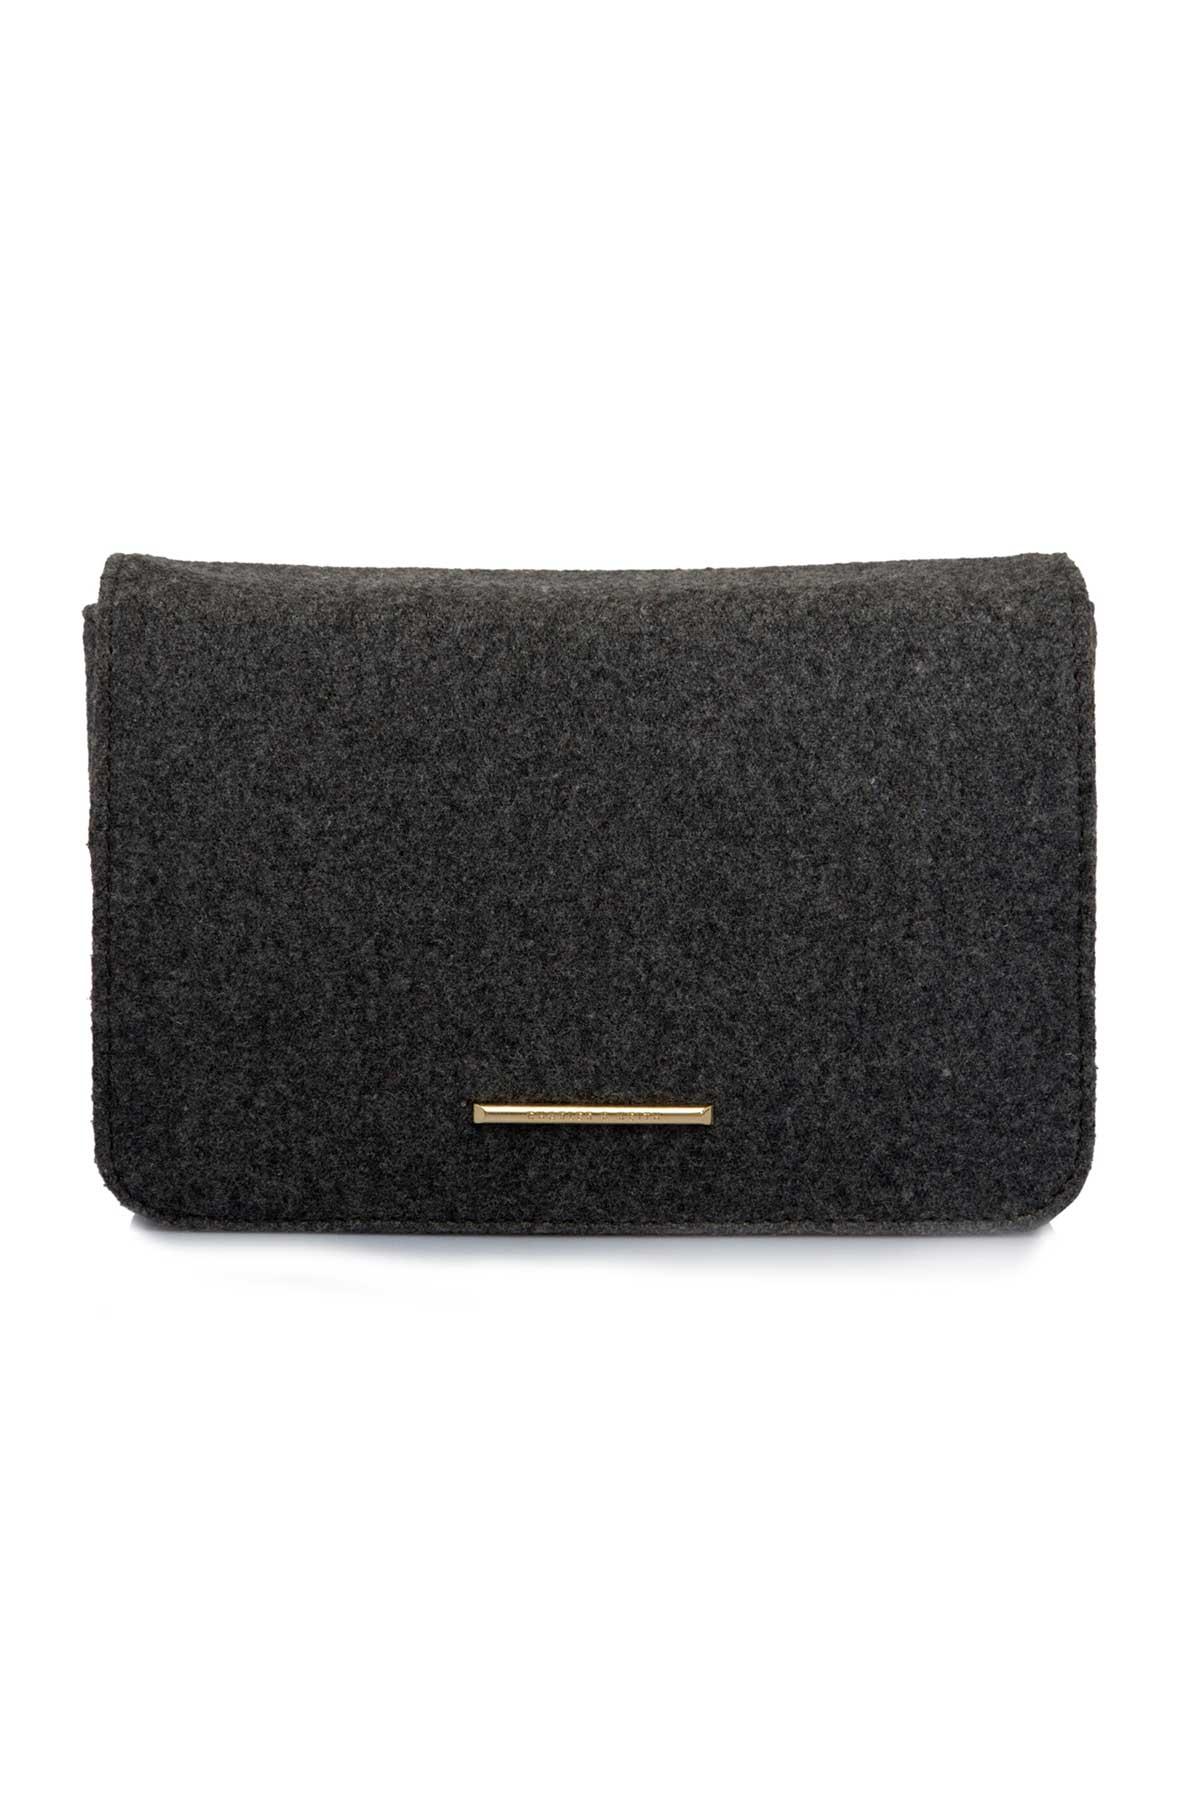 Trendy Ikkat Box Clutch #53992 | Buy Trendy Handbags Online